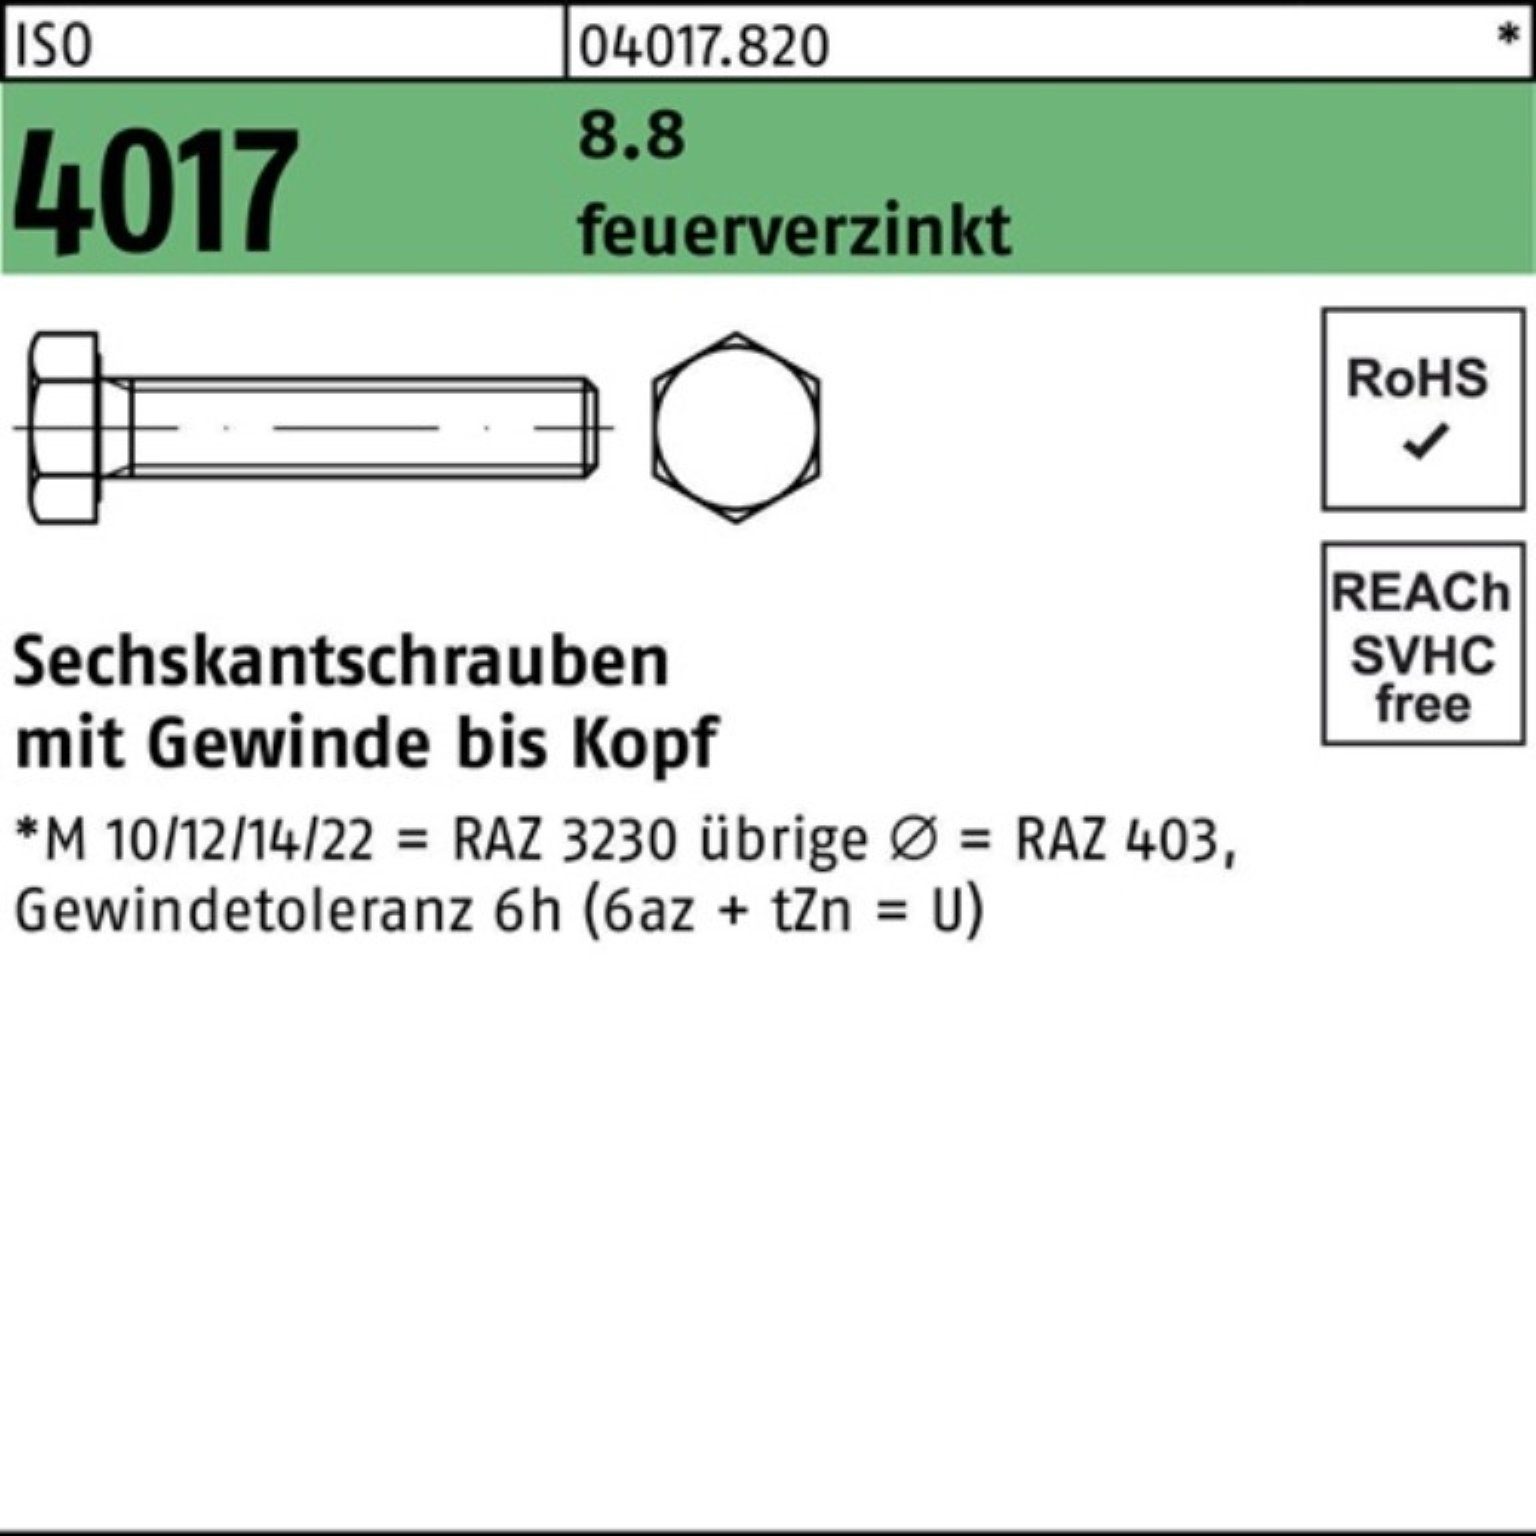 VG Sechskantschraube St 8.8 100er ISO Sechskantschraube 25 Pack 60 4017 feuerverz. M20x Bufab